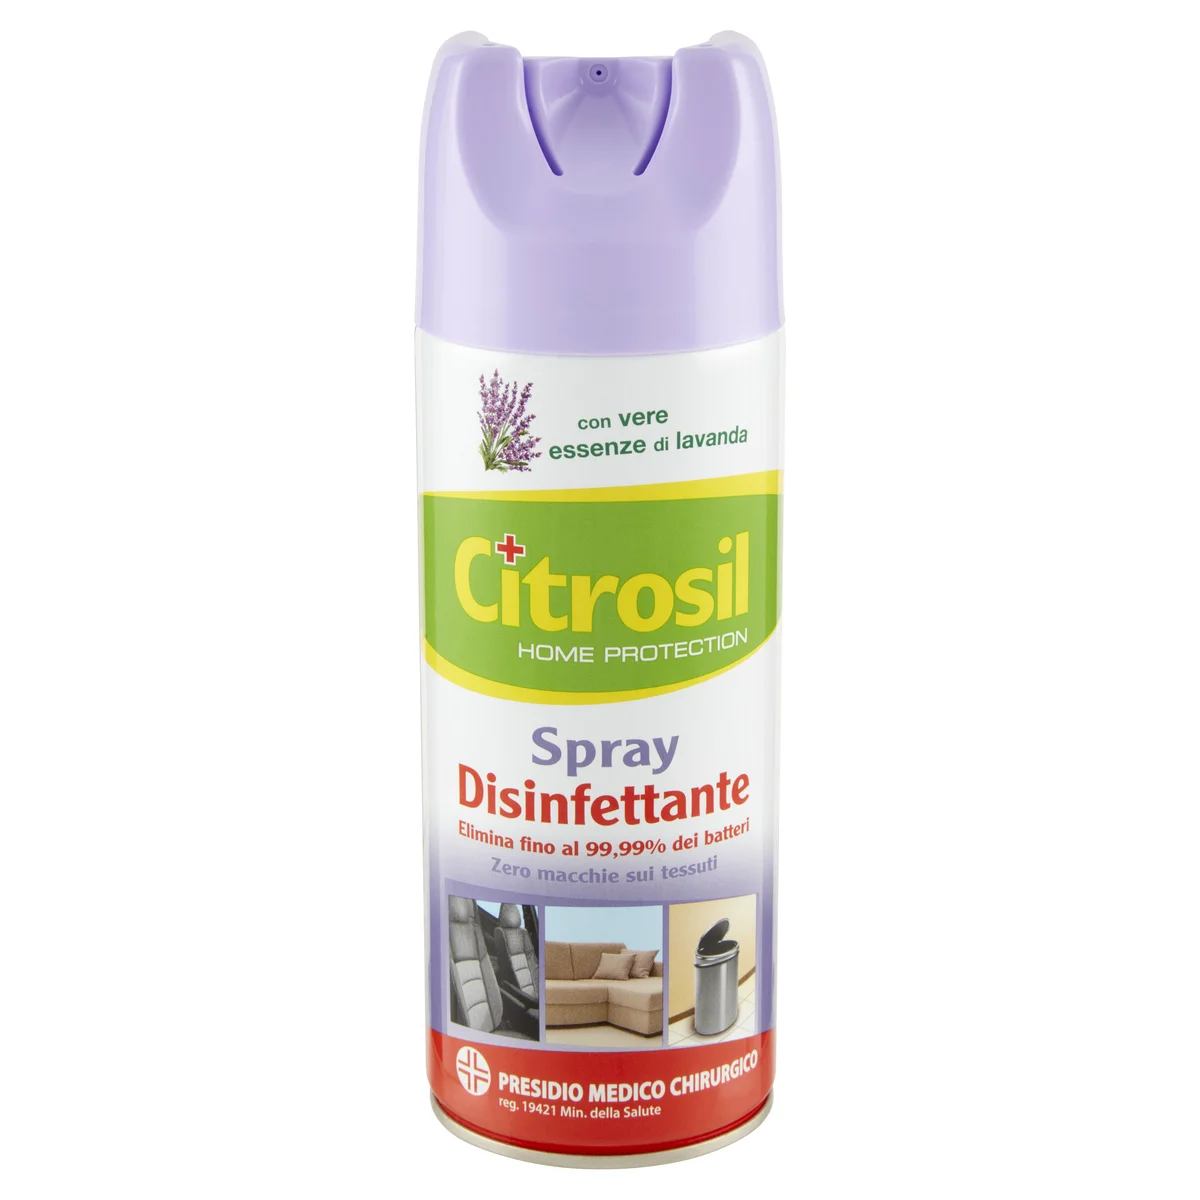 Citrosil Home Protection Spray Disinfettante con essenze di lavanda 300 ml